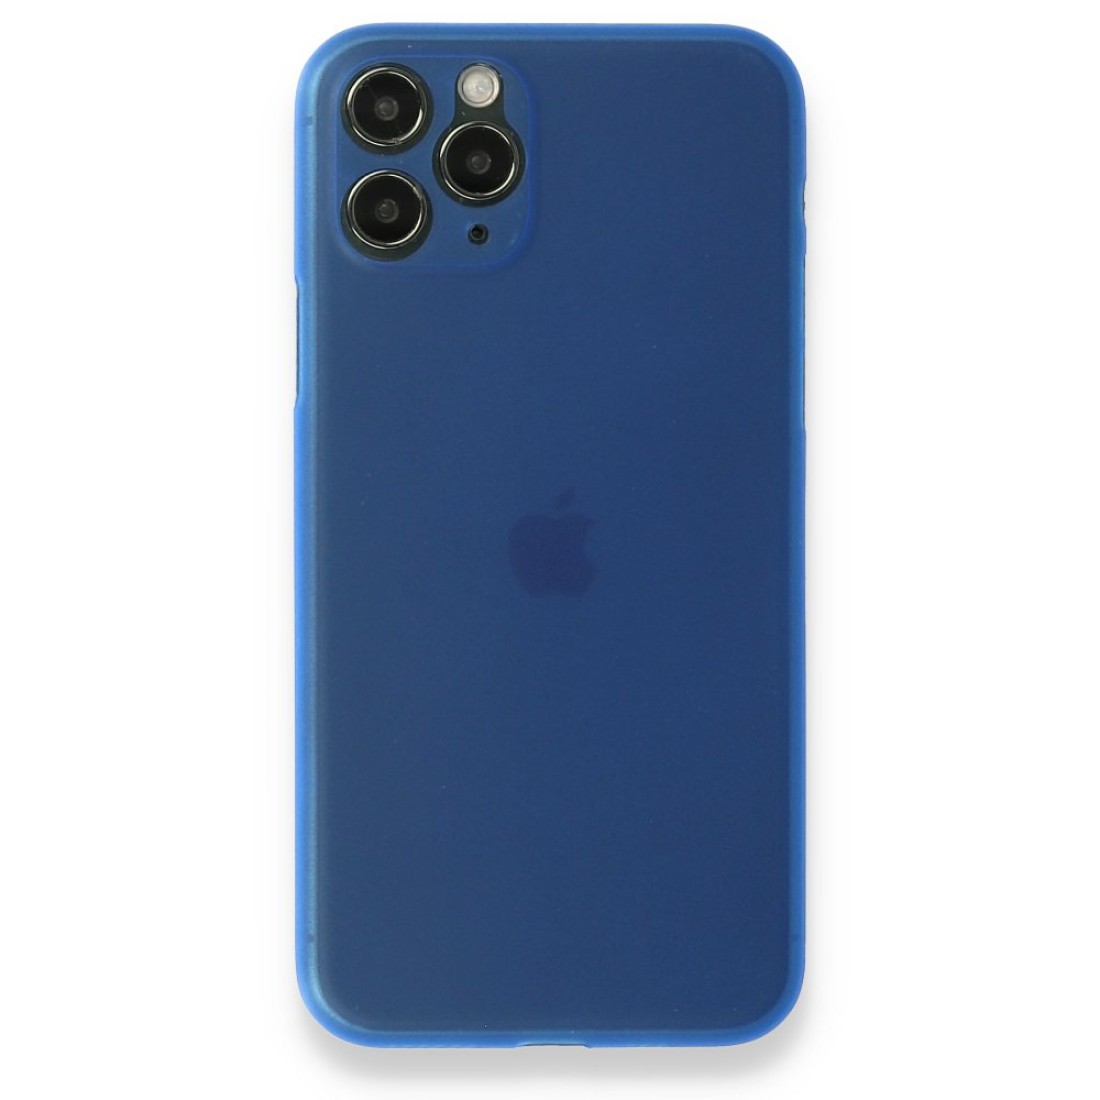 Apple iPhone 11 Pro Kılıf PP Ultra İnce Kapak - Mavi